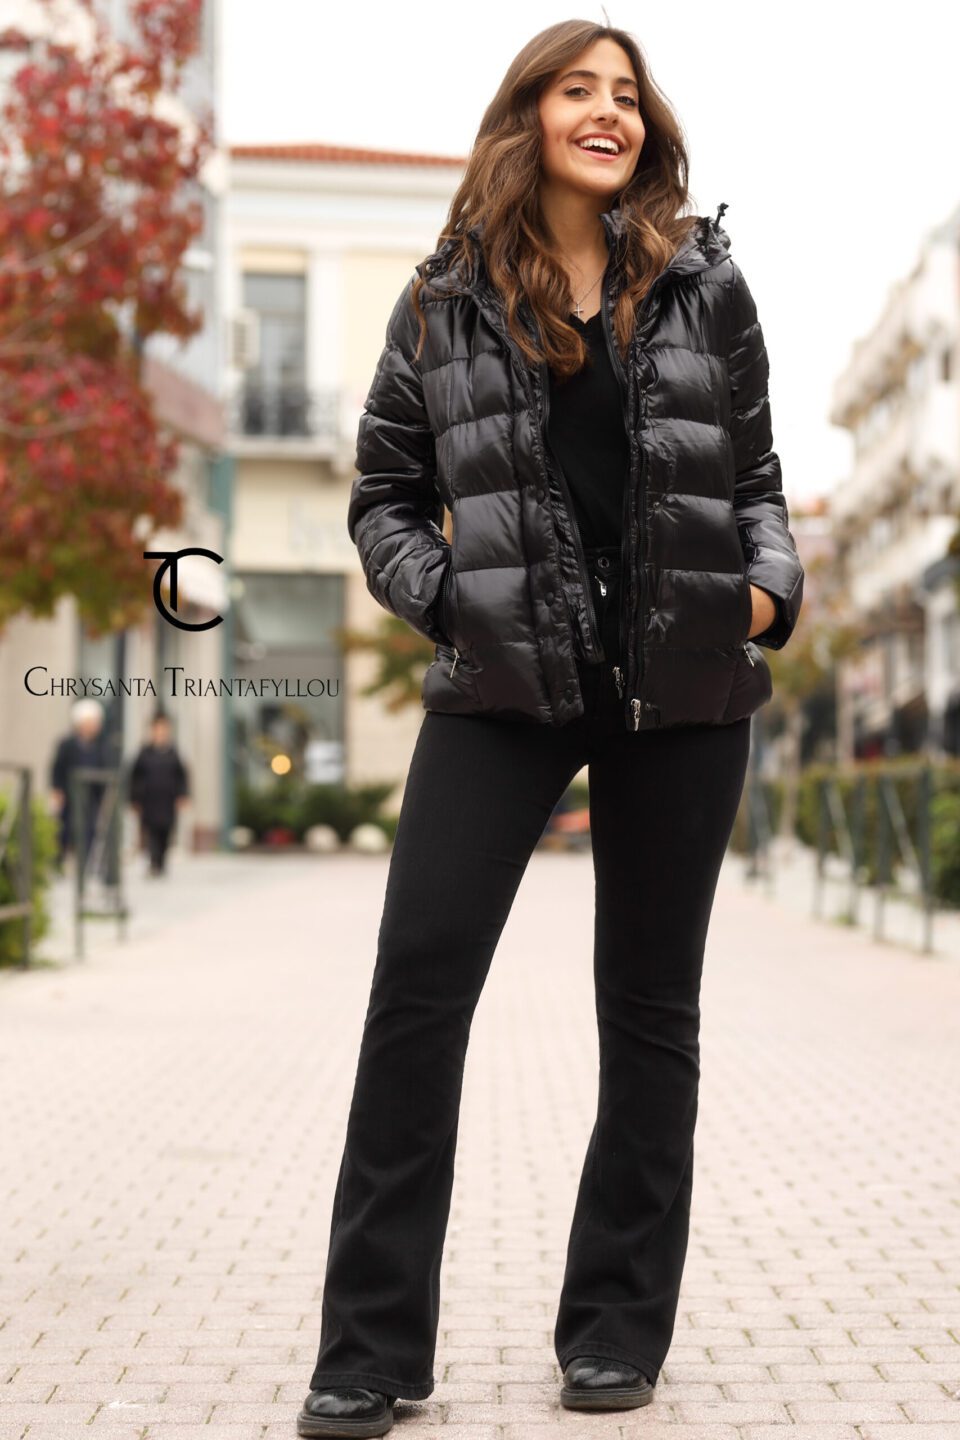 Γυναικείο μπουφάν κοντό με glosy effect σε μαύρο